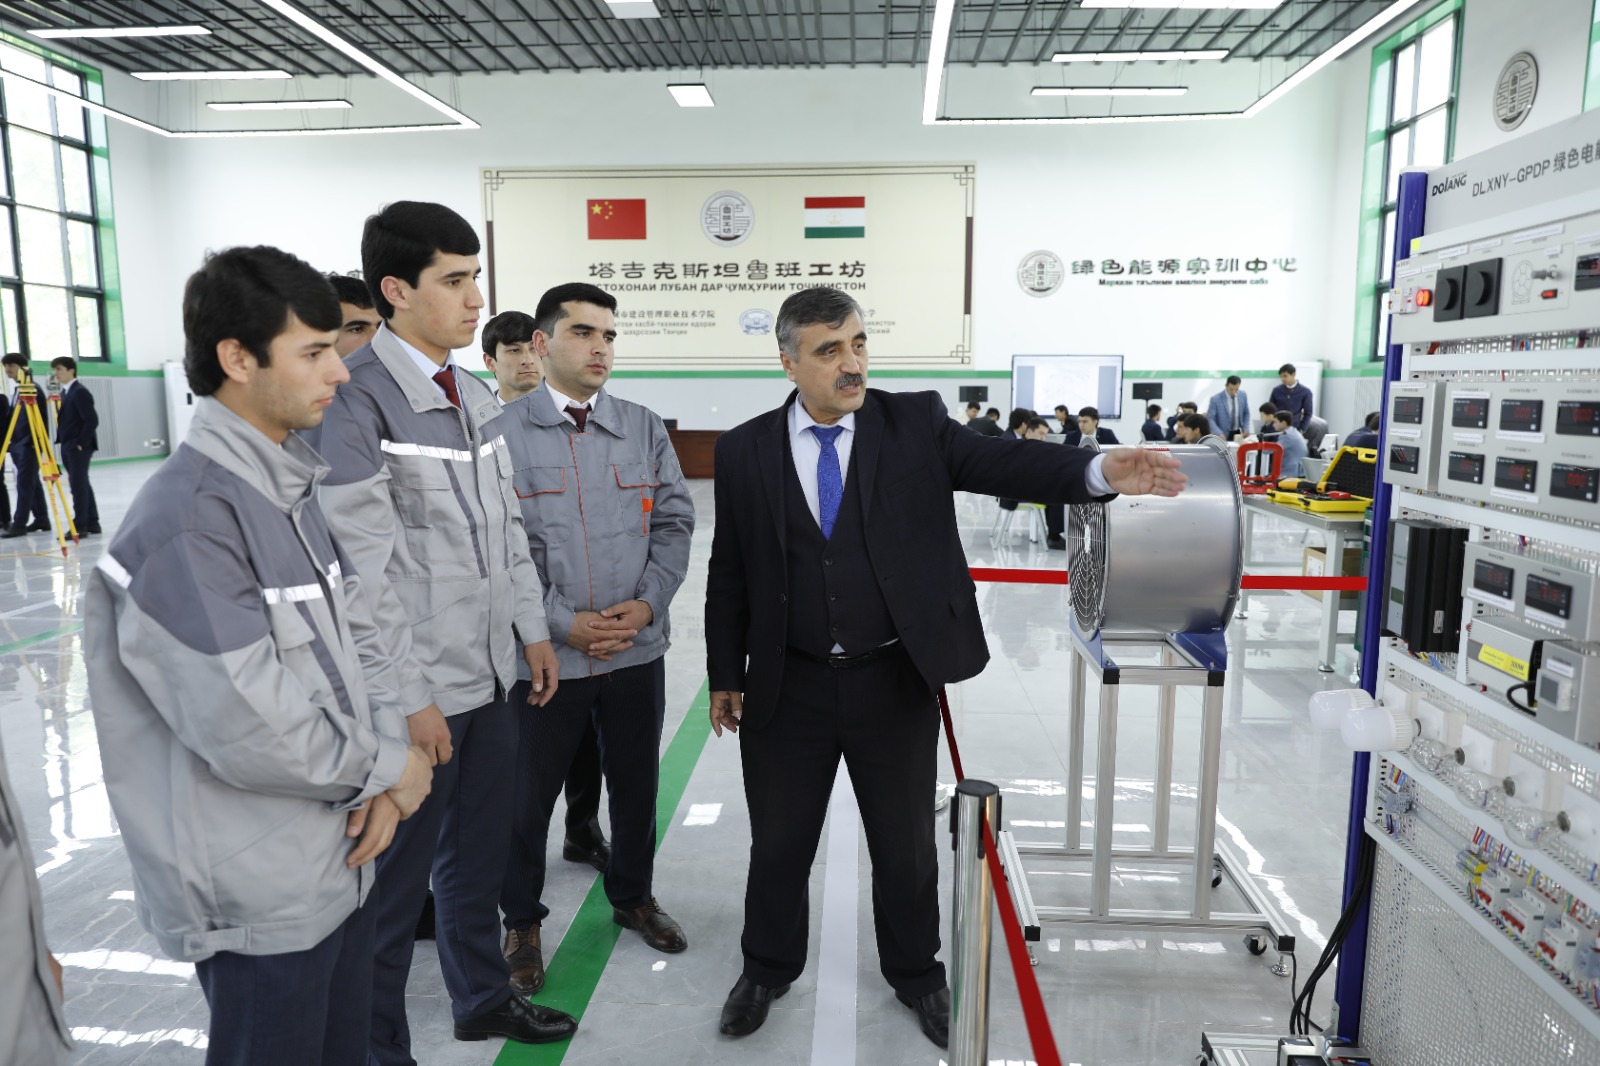 أستاذ طاجيكي يقدم للطلاب جهازا للطاقة الكهربائية الخضراء في ورشة لوبان في دوشانبى، طاجيكستان يوم 12 أبريل 2023. (شينخوا)